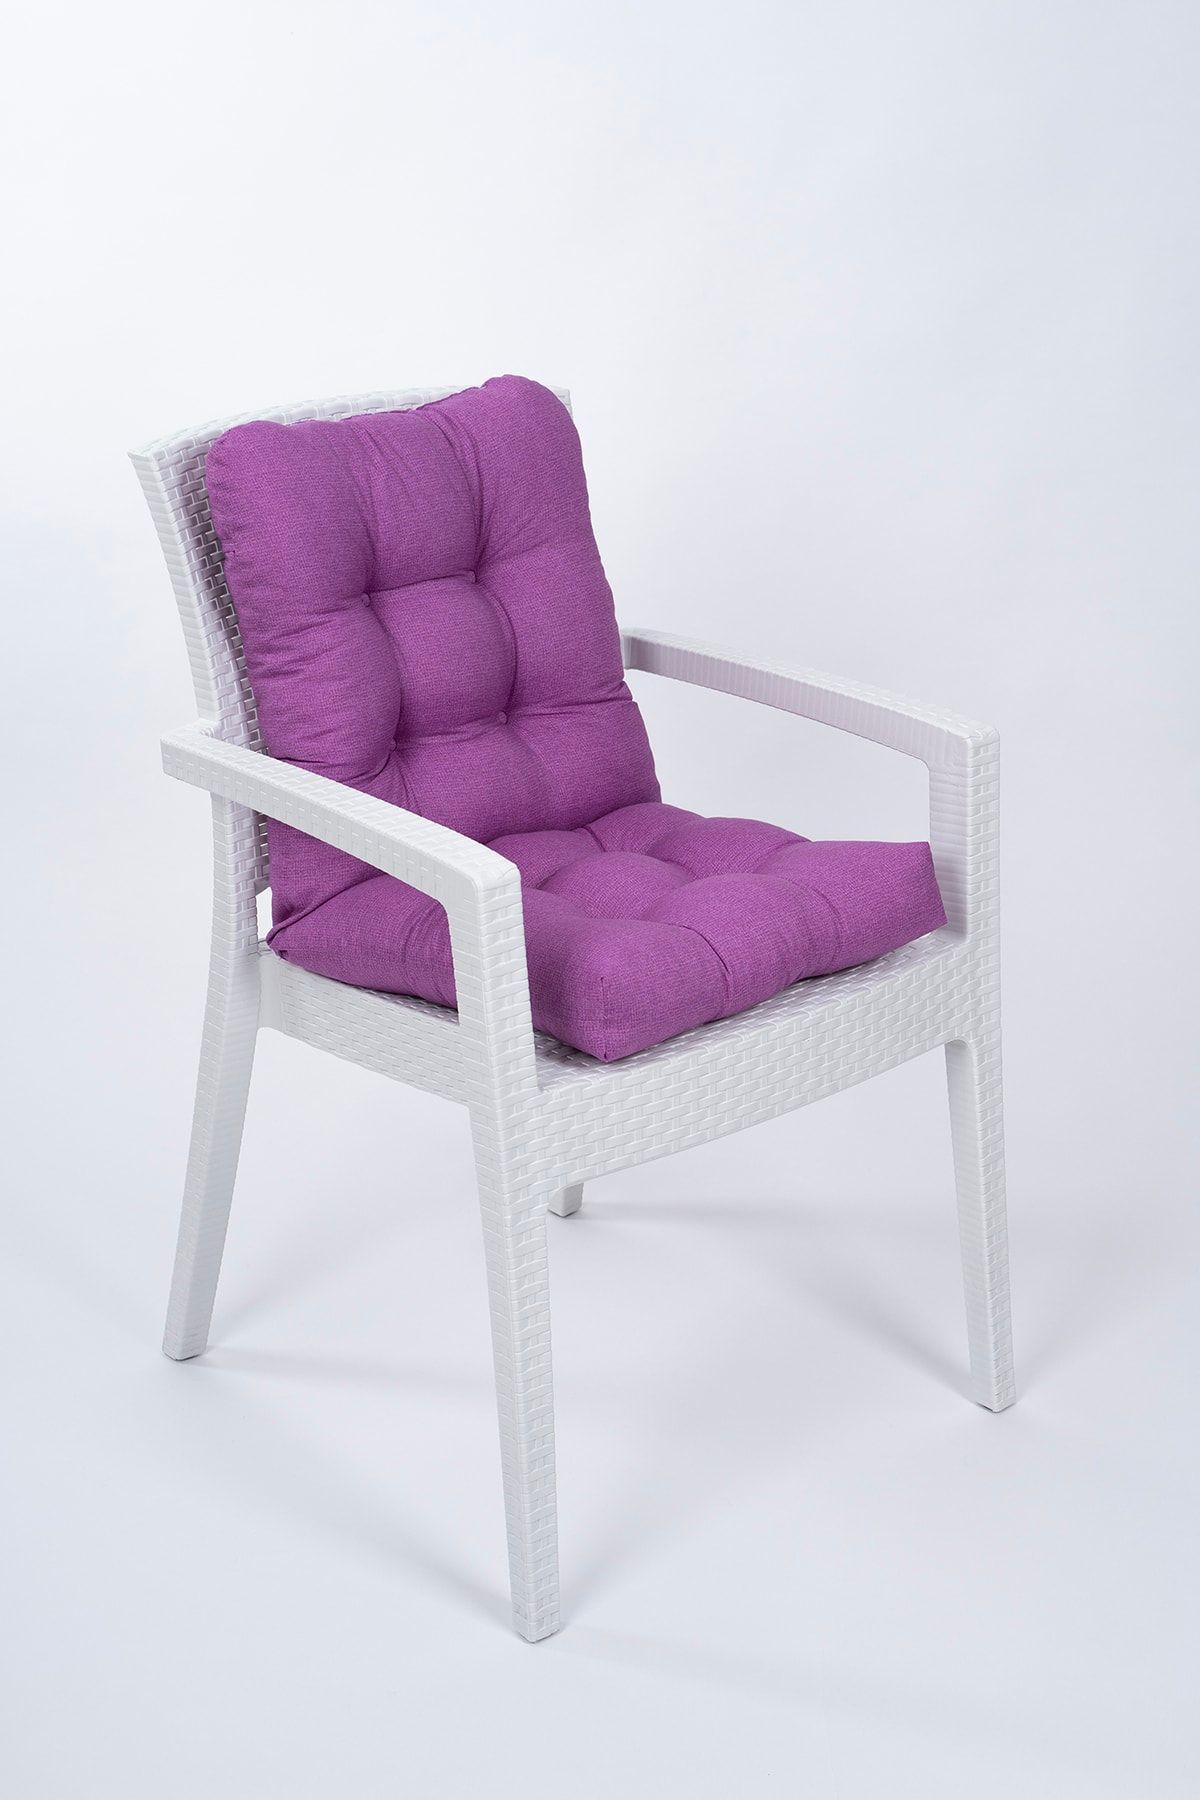 ALTINPAMUK Candy Pofidik Arkalıklı Mor Sandalye Minderi Özel Dikişli Bağcıklı 43x88 Cm